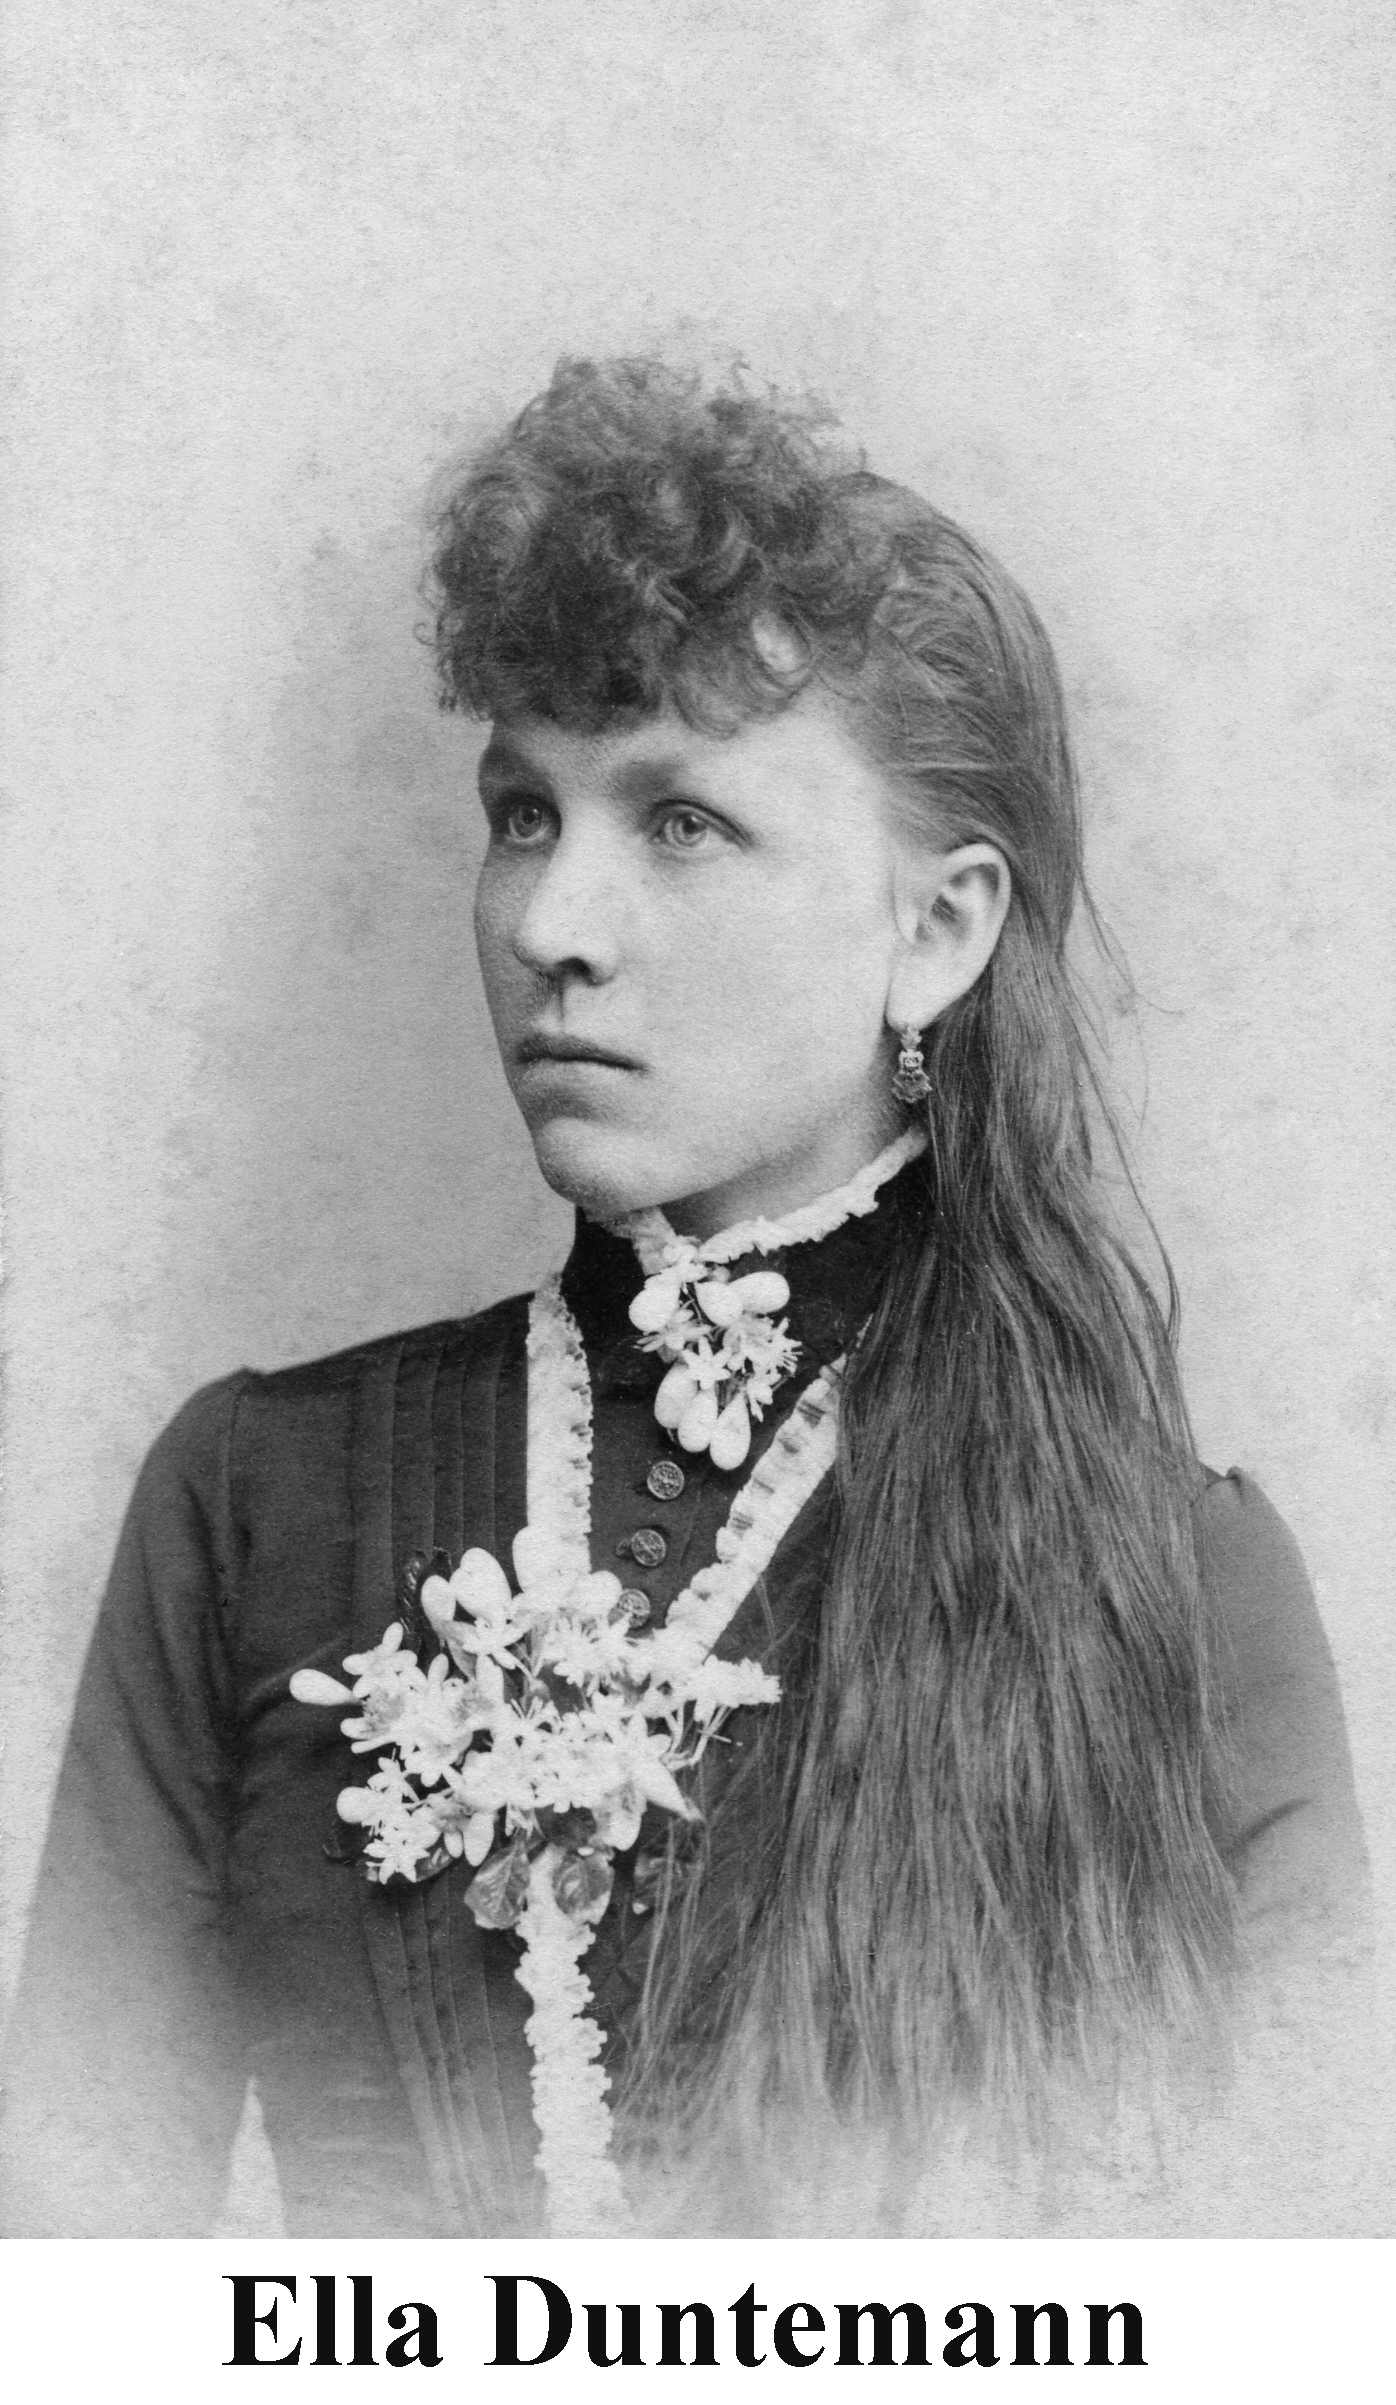 Ella Duntemann in 1890